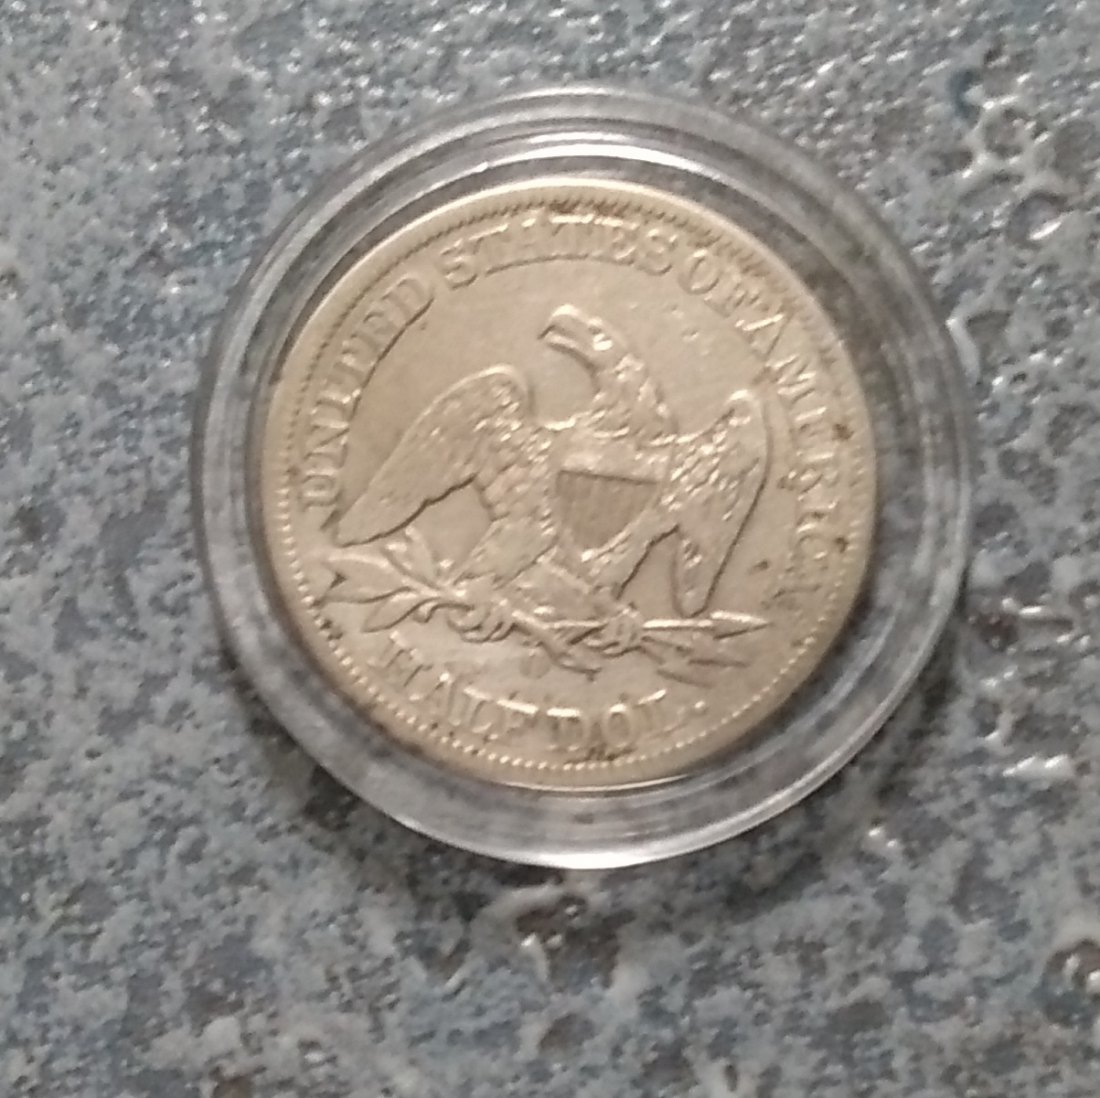  Half Silberdollar 900er,USA,1859, New Orleans, in Kapsel   